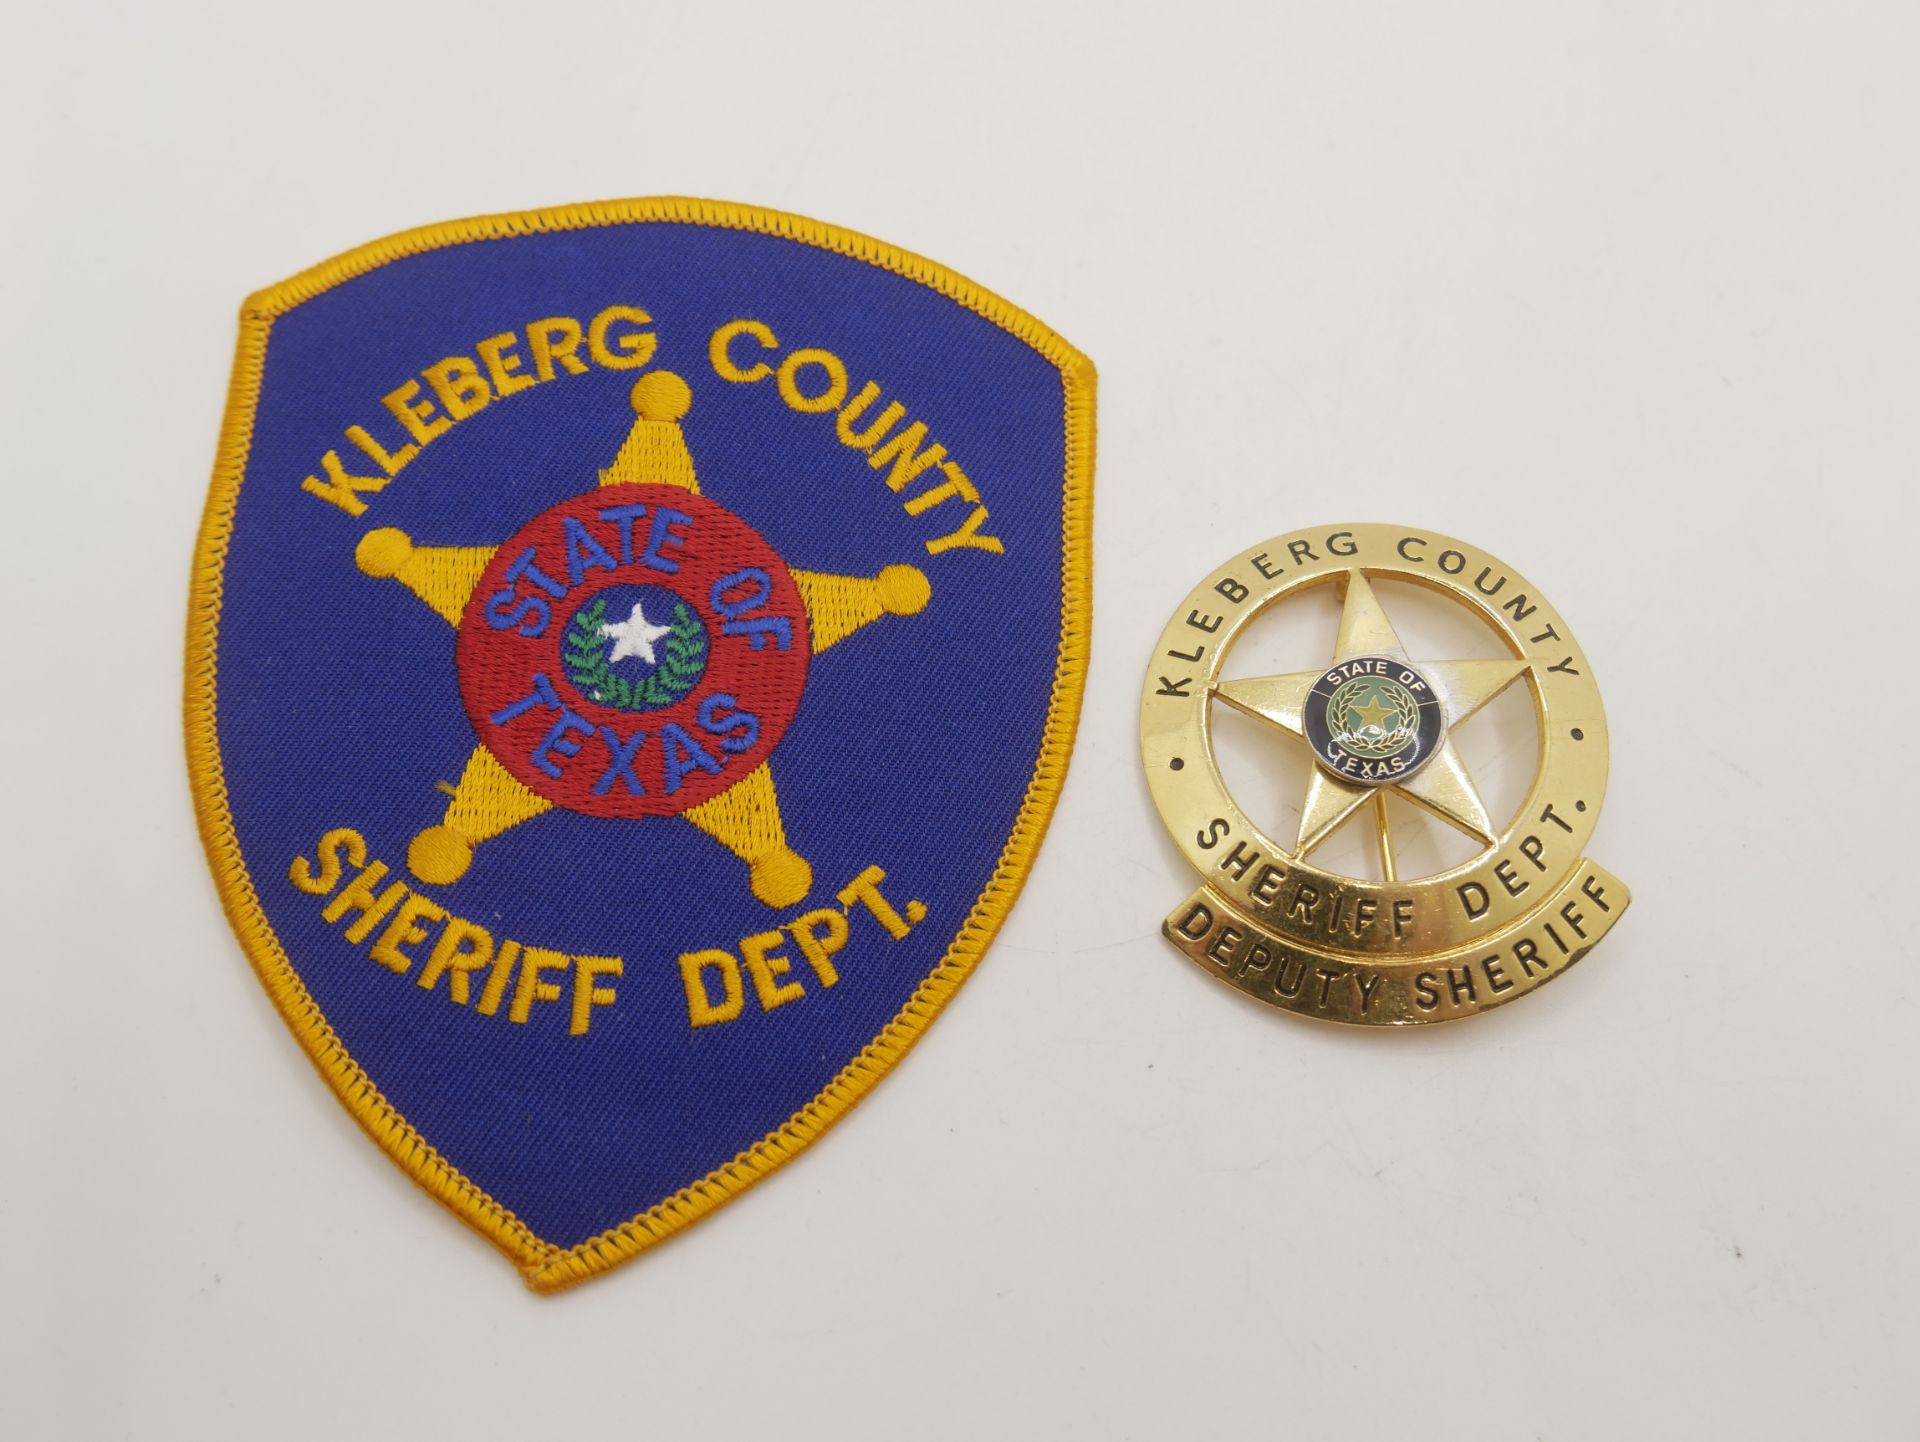 Aus Sammelauflösung! Lot Aufnäher / Patches sowie 1 Marke "Kleberg County Sheriff Dept." insgesamt 2